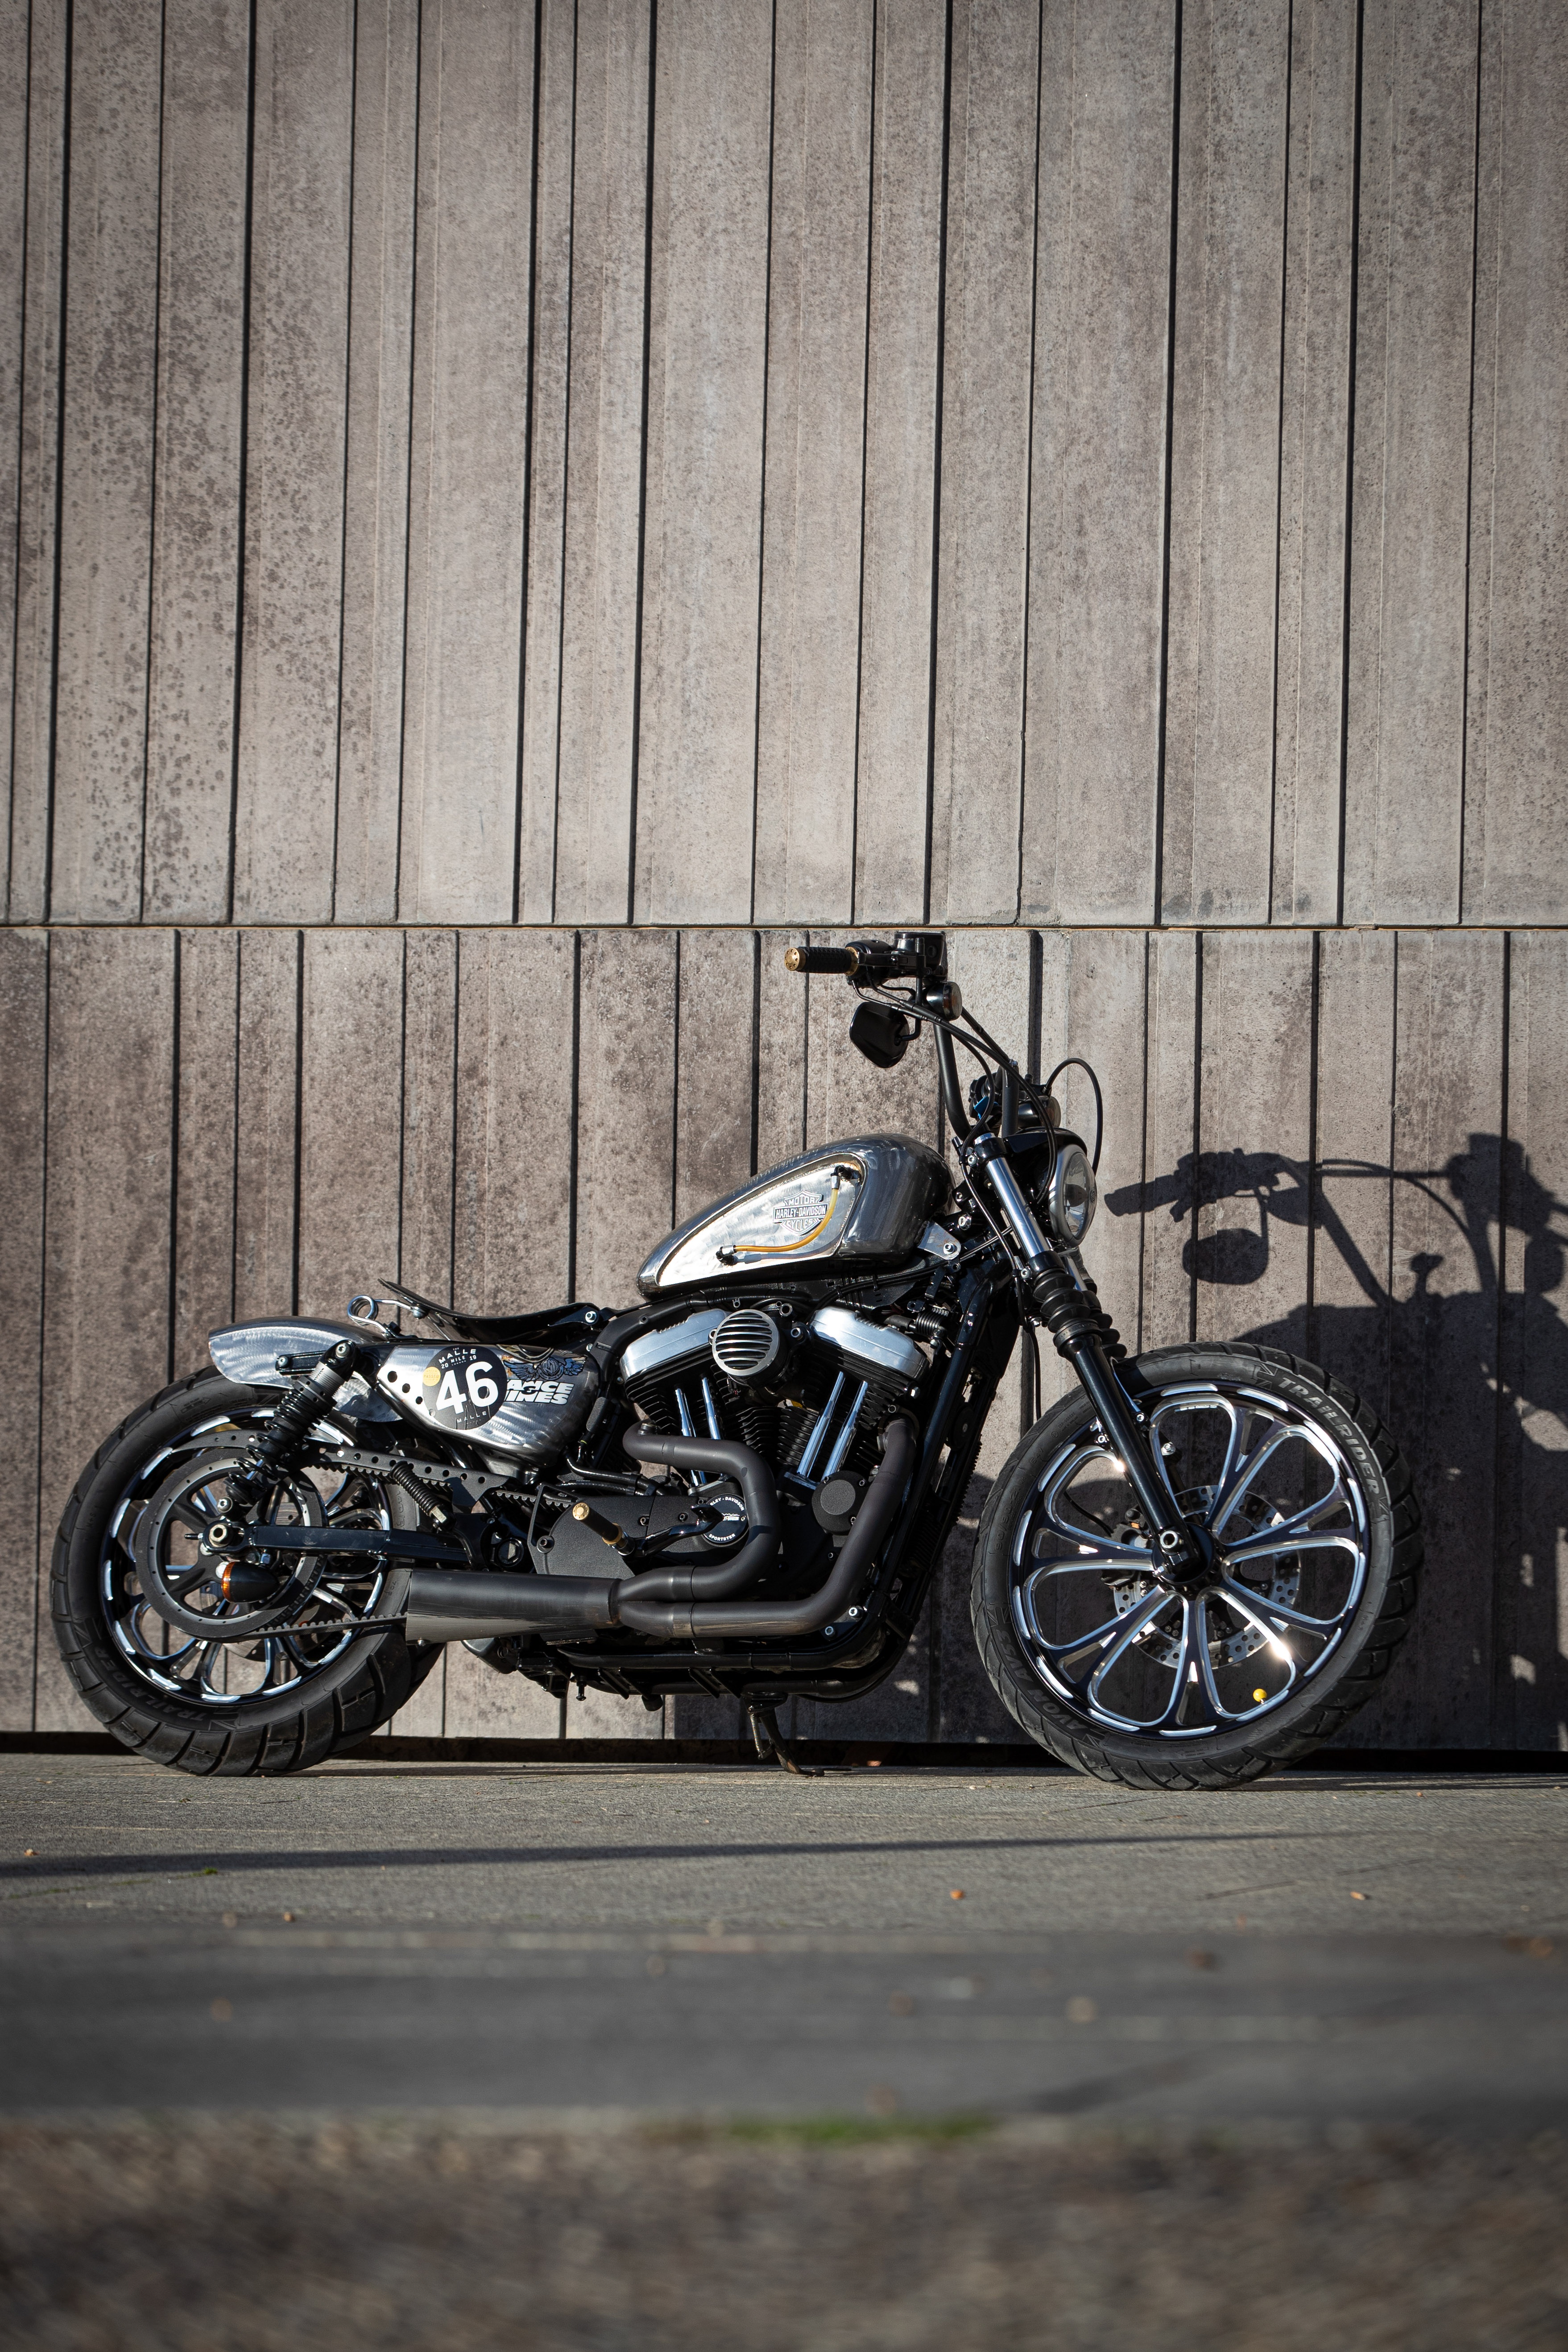 Ngam dan xe Harley-Davidson Sportster lot xac voi ban do Sykes hinh anh 5 2020_Harley_Davidson_Sportster_Custom_5315.jpg